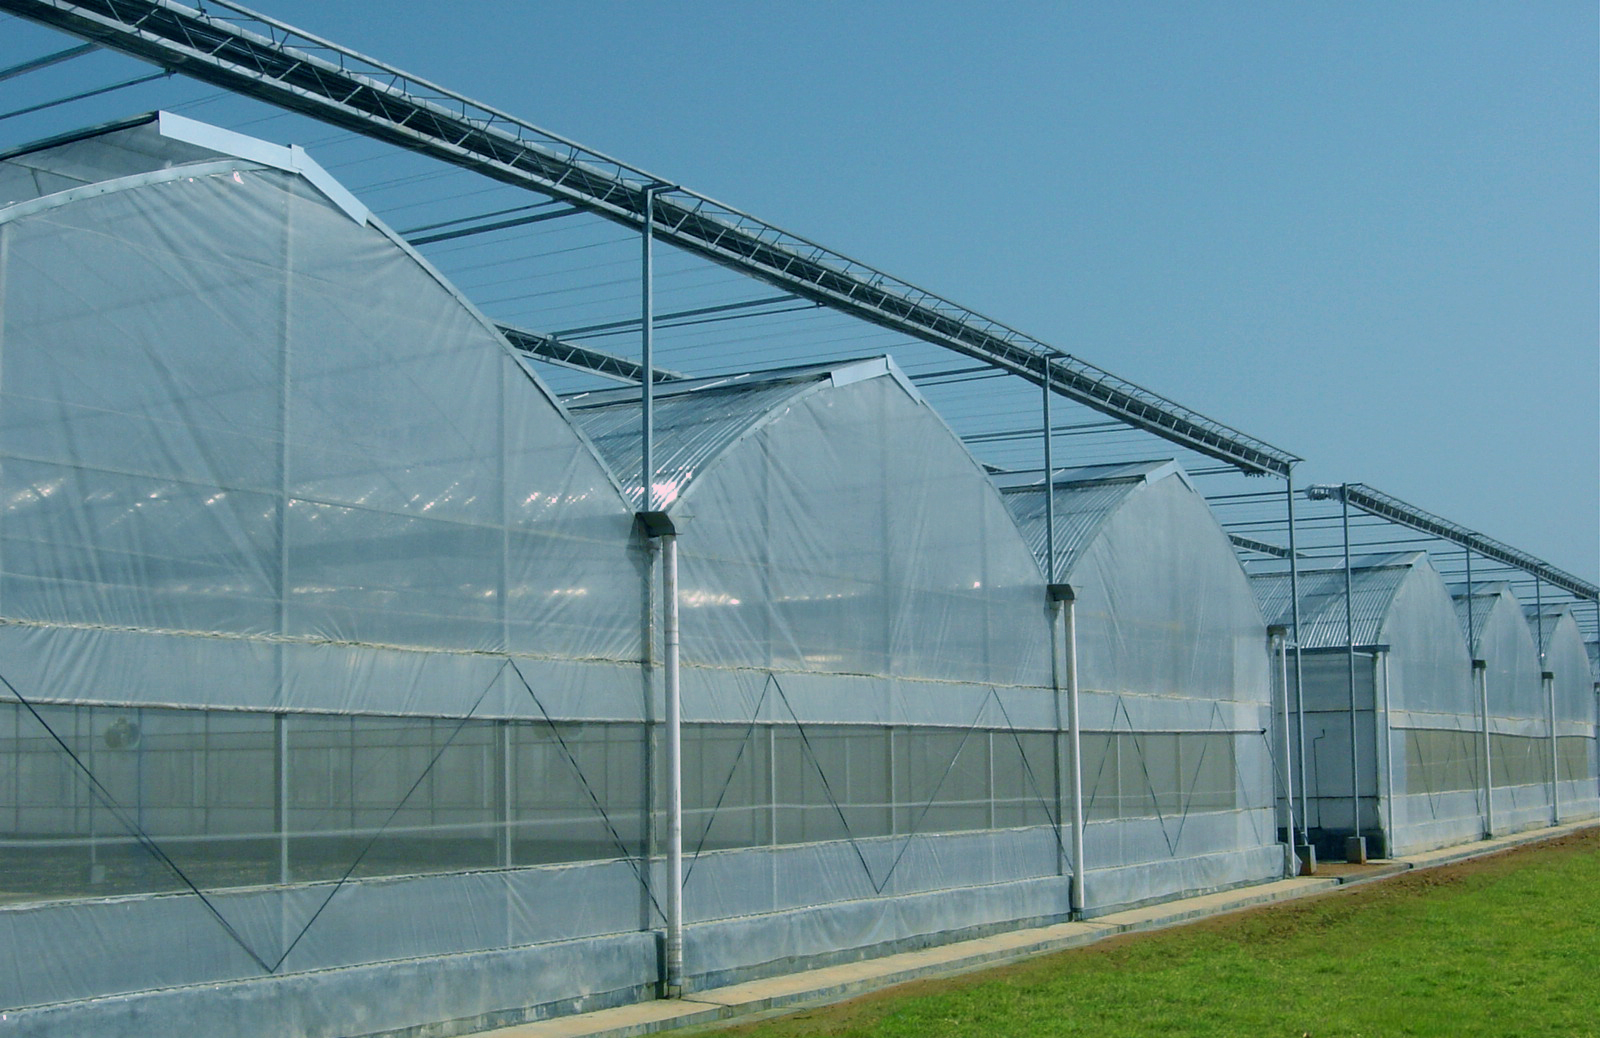 乌鲁木齐温室大棚的采光保温是大棚造价的主要因素